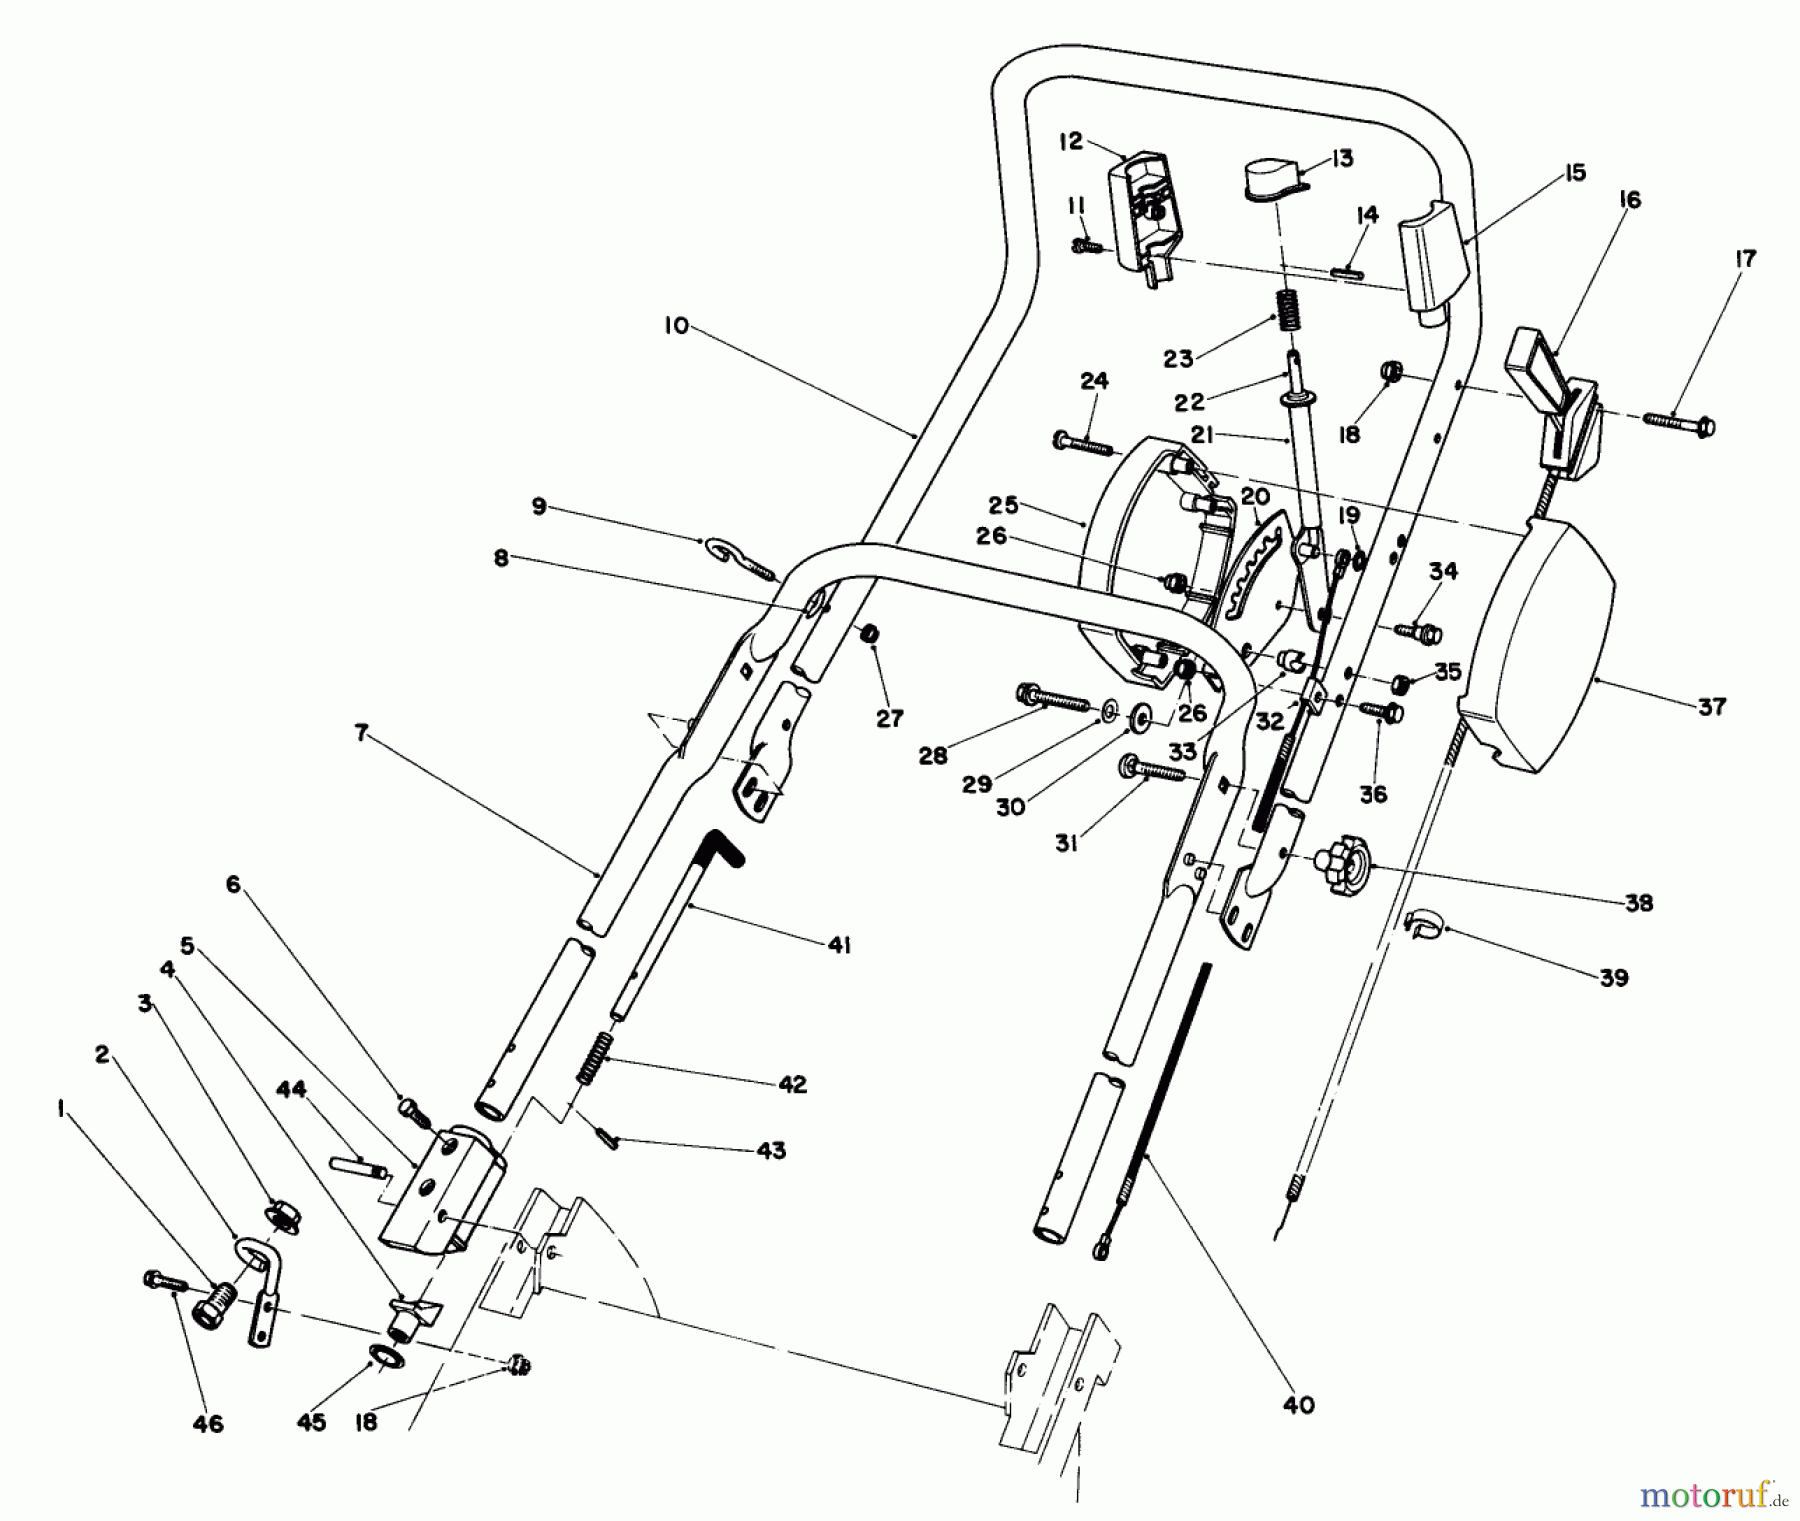  Toro Neu Mowers, Walk-Behind Seite 1 20815 - Toro Lawnmower, 1981 (1000001-1999999) HANDLE ASSEMBLY